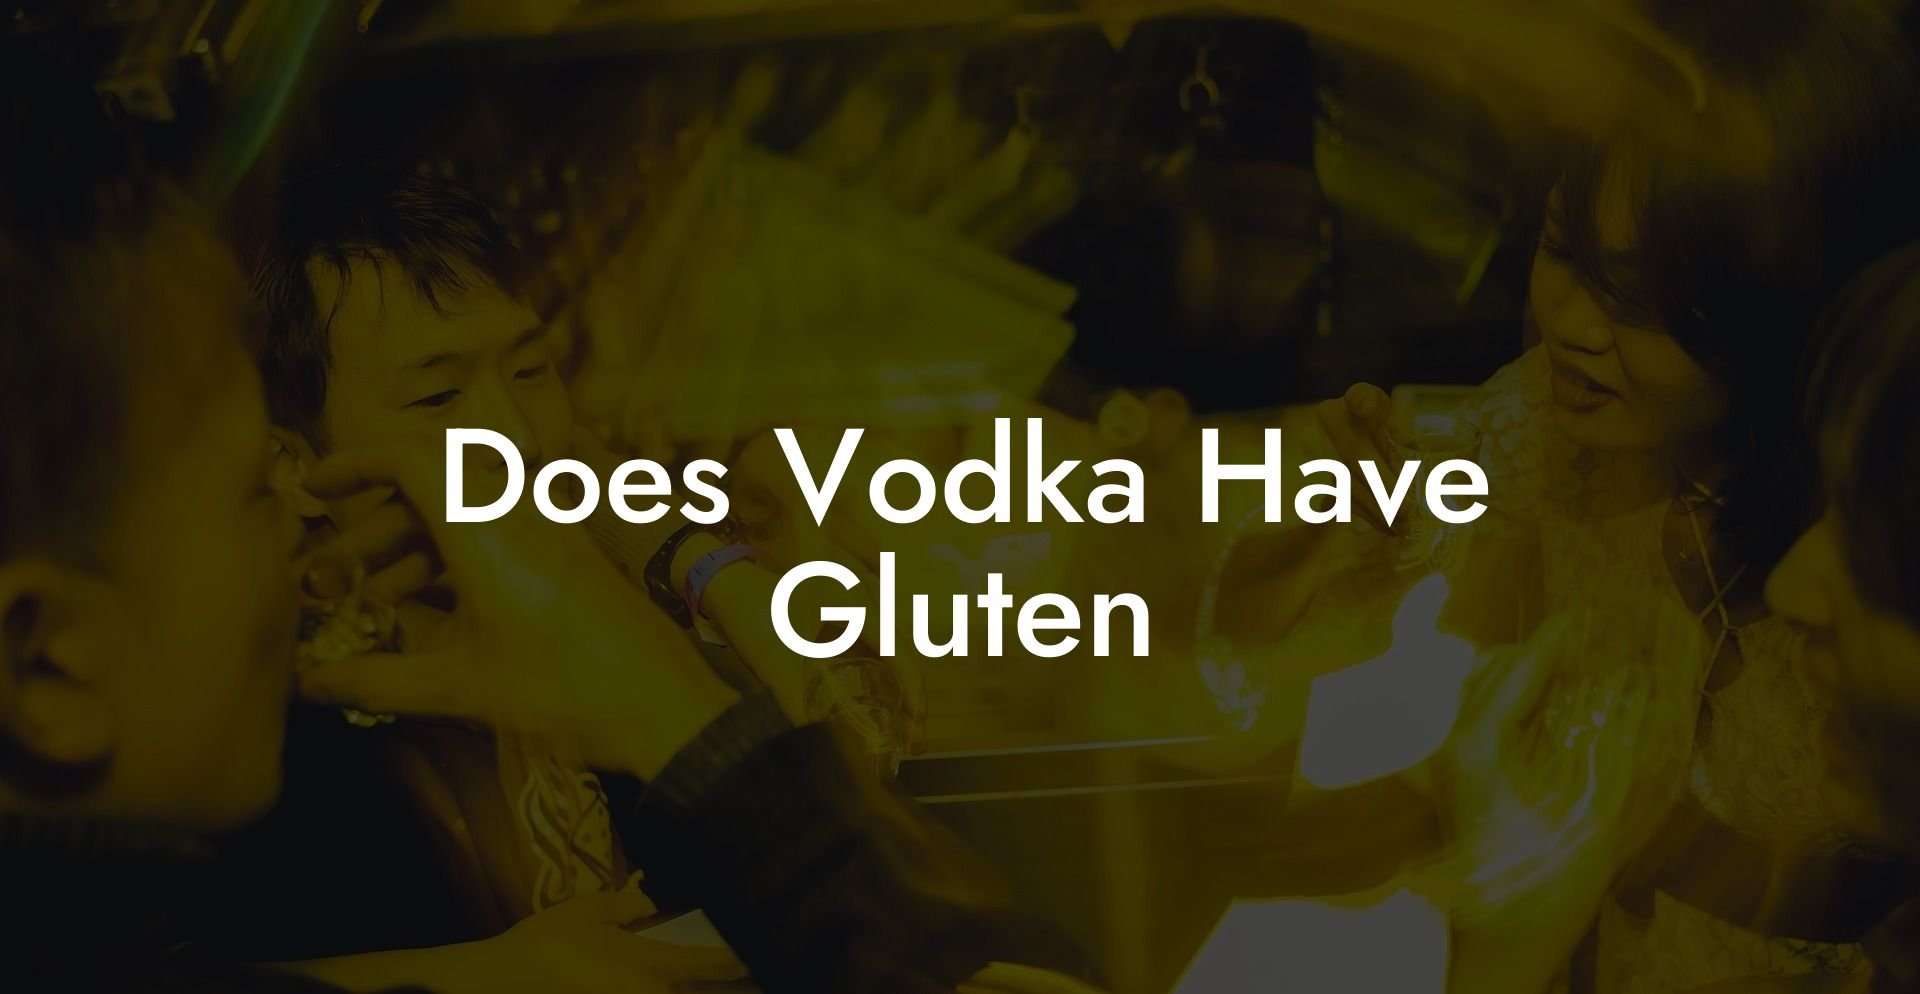 Does Vodka Have Gluten